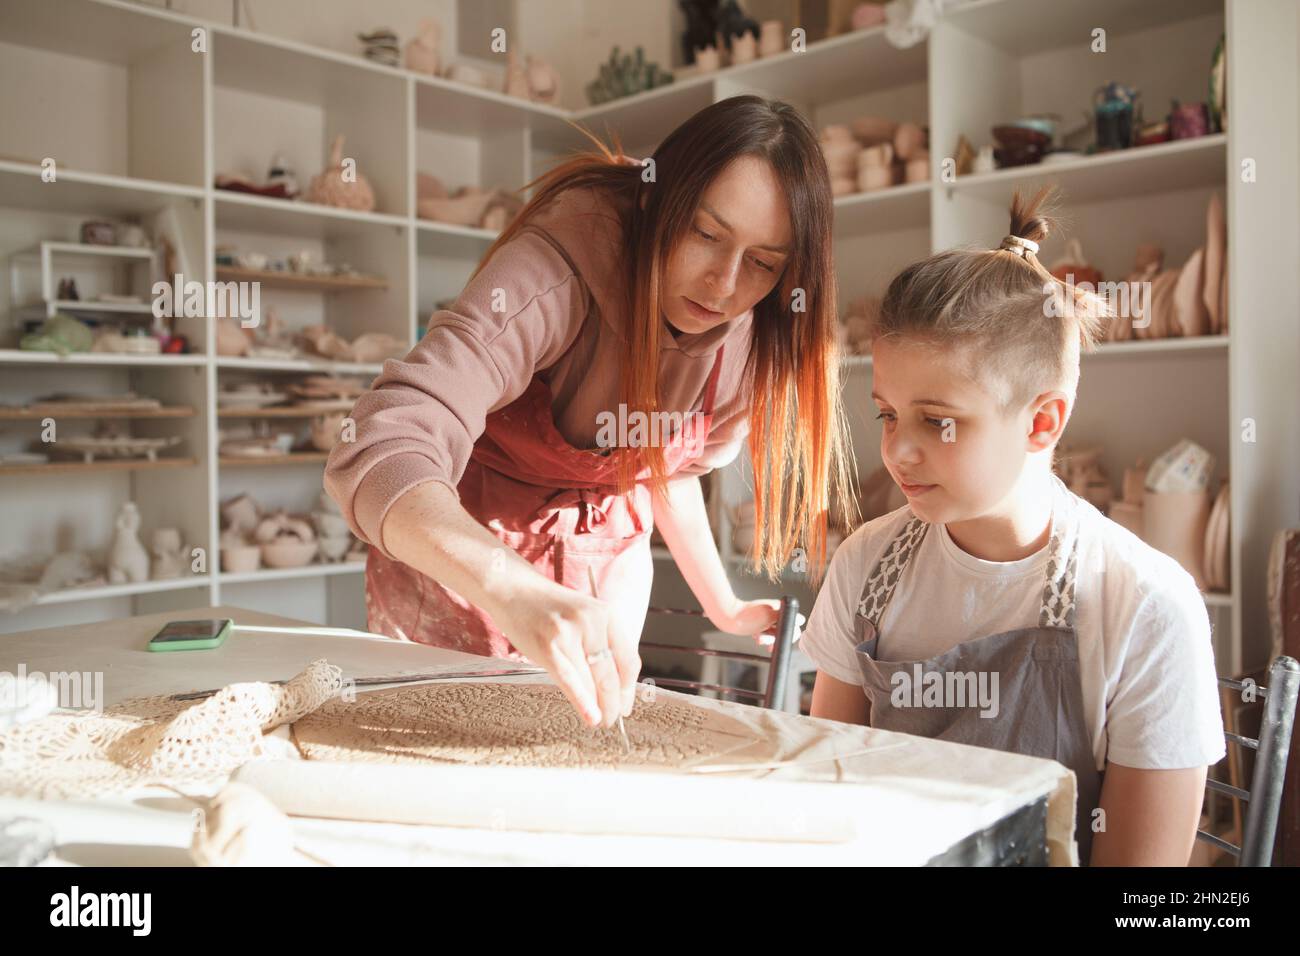 Professioneller Keramiker, der einem kleinen Jungen Töpferei beibringt, Raum kopieren Stockfoto